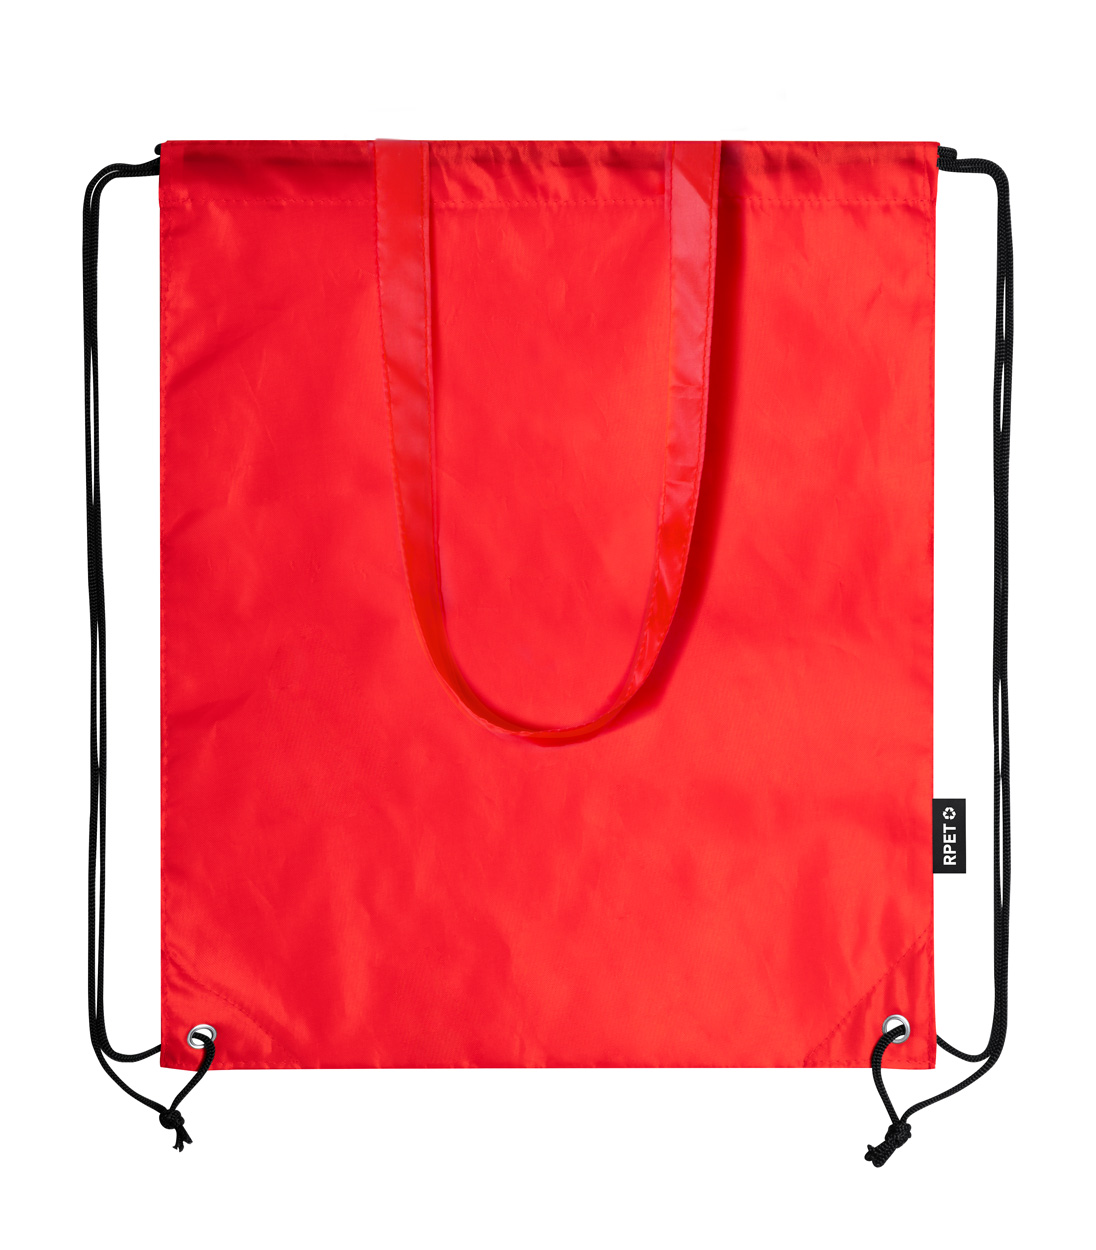 Falyan RPET drawstring bag - red